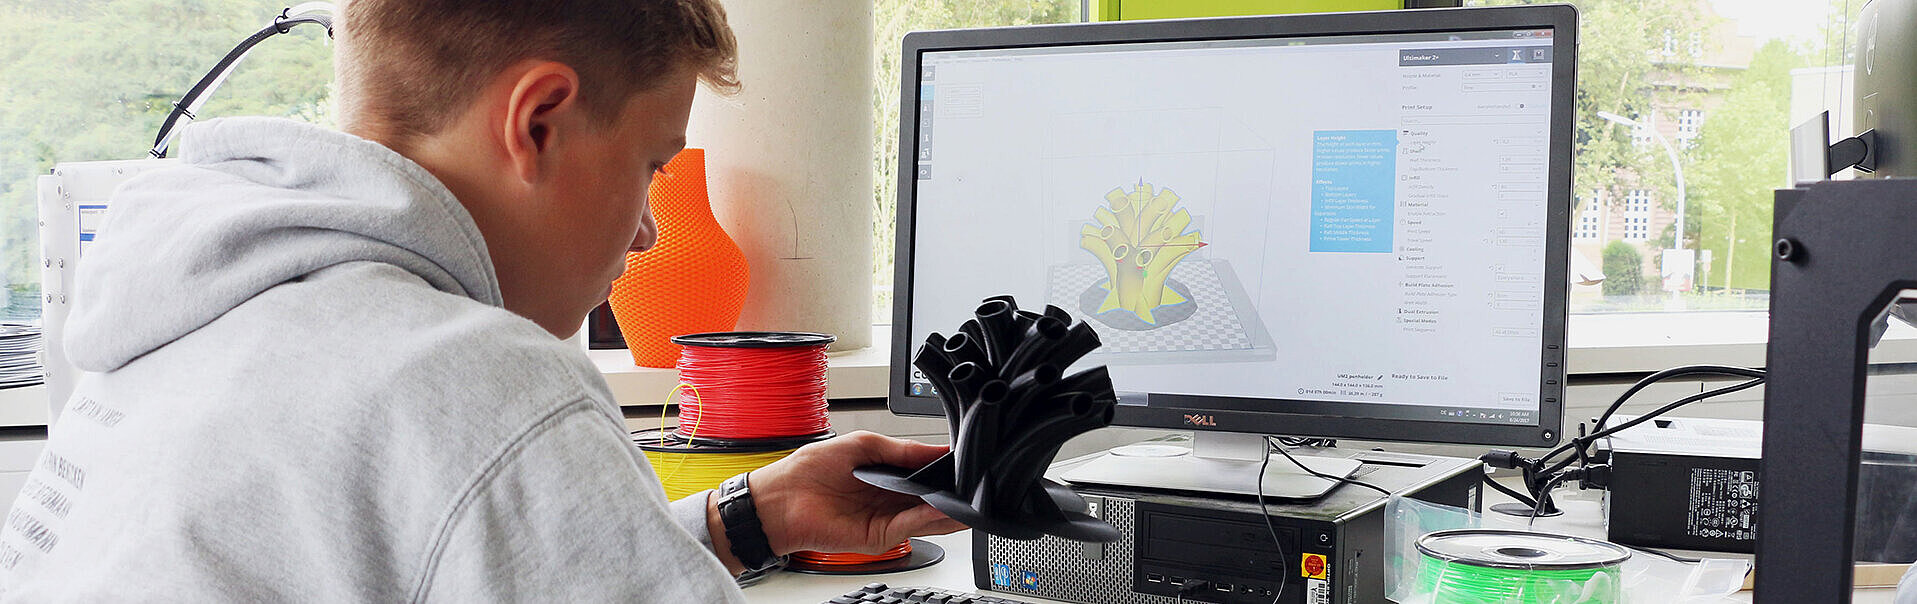 Bild: 3D-Kompetenzzentrum Niederrhein für ein innovatives und soziales Europa